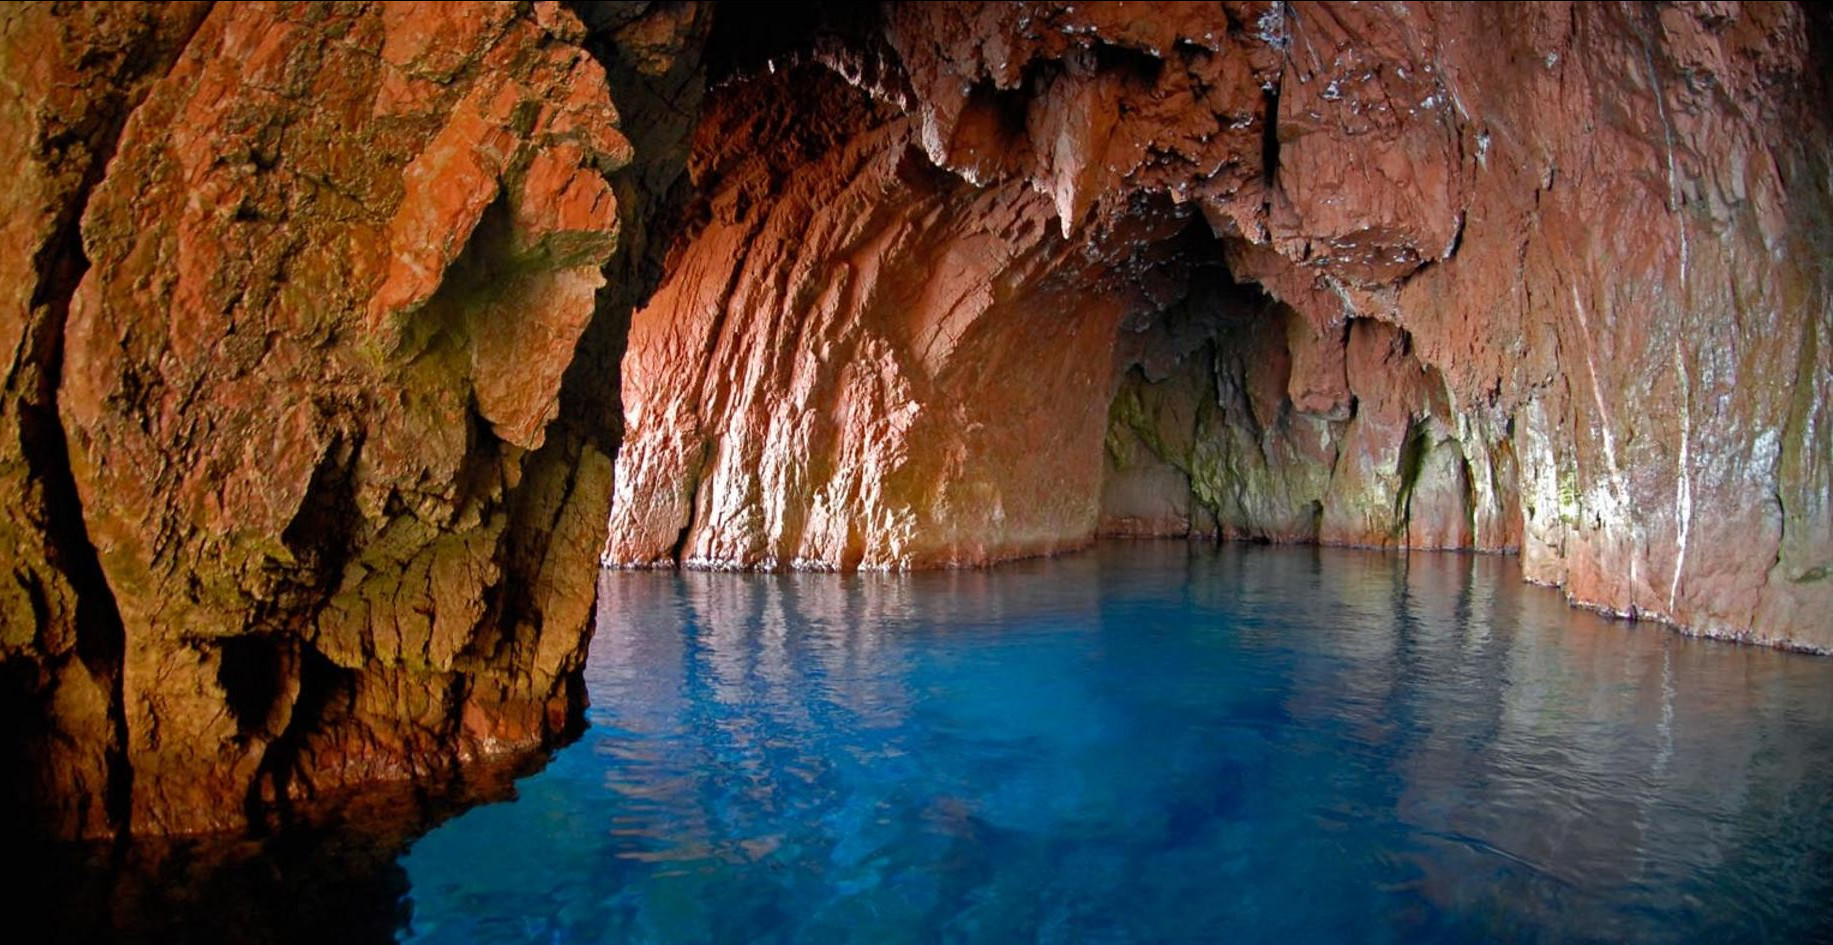 Paysage de la réserve de Scandola avec ses structures rocheuses et l’eau turquoise lorsque l’on pénètre dans ses falaises de granit rouge 